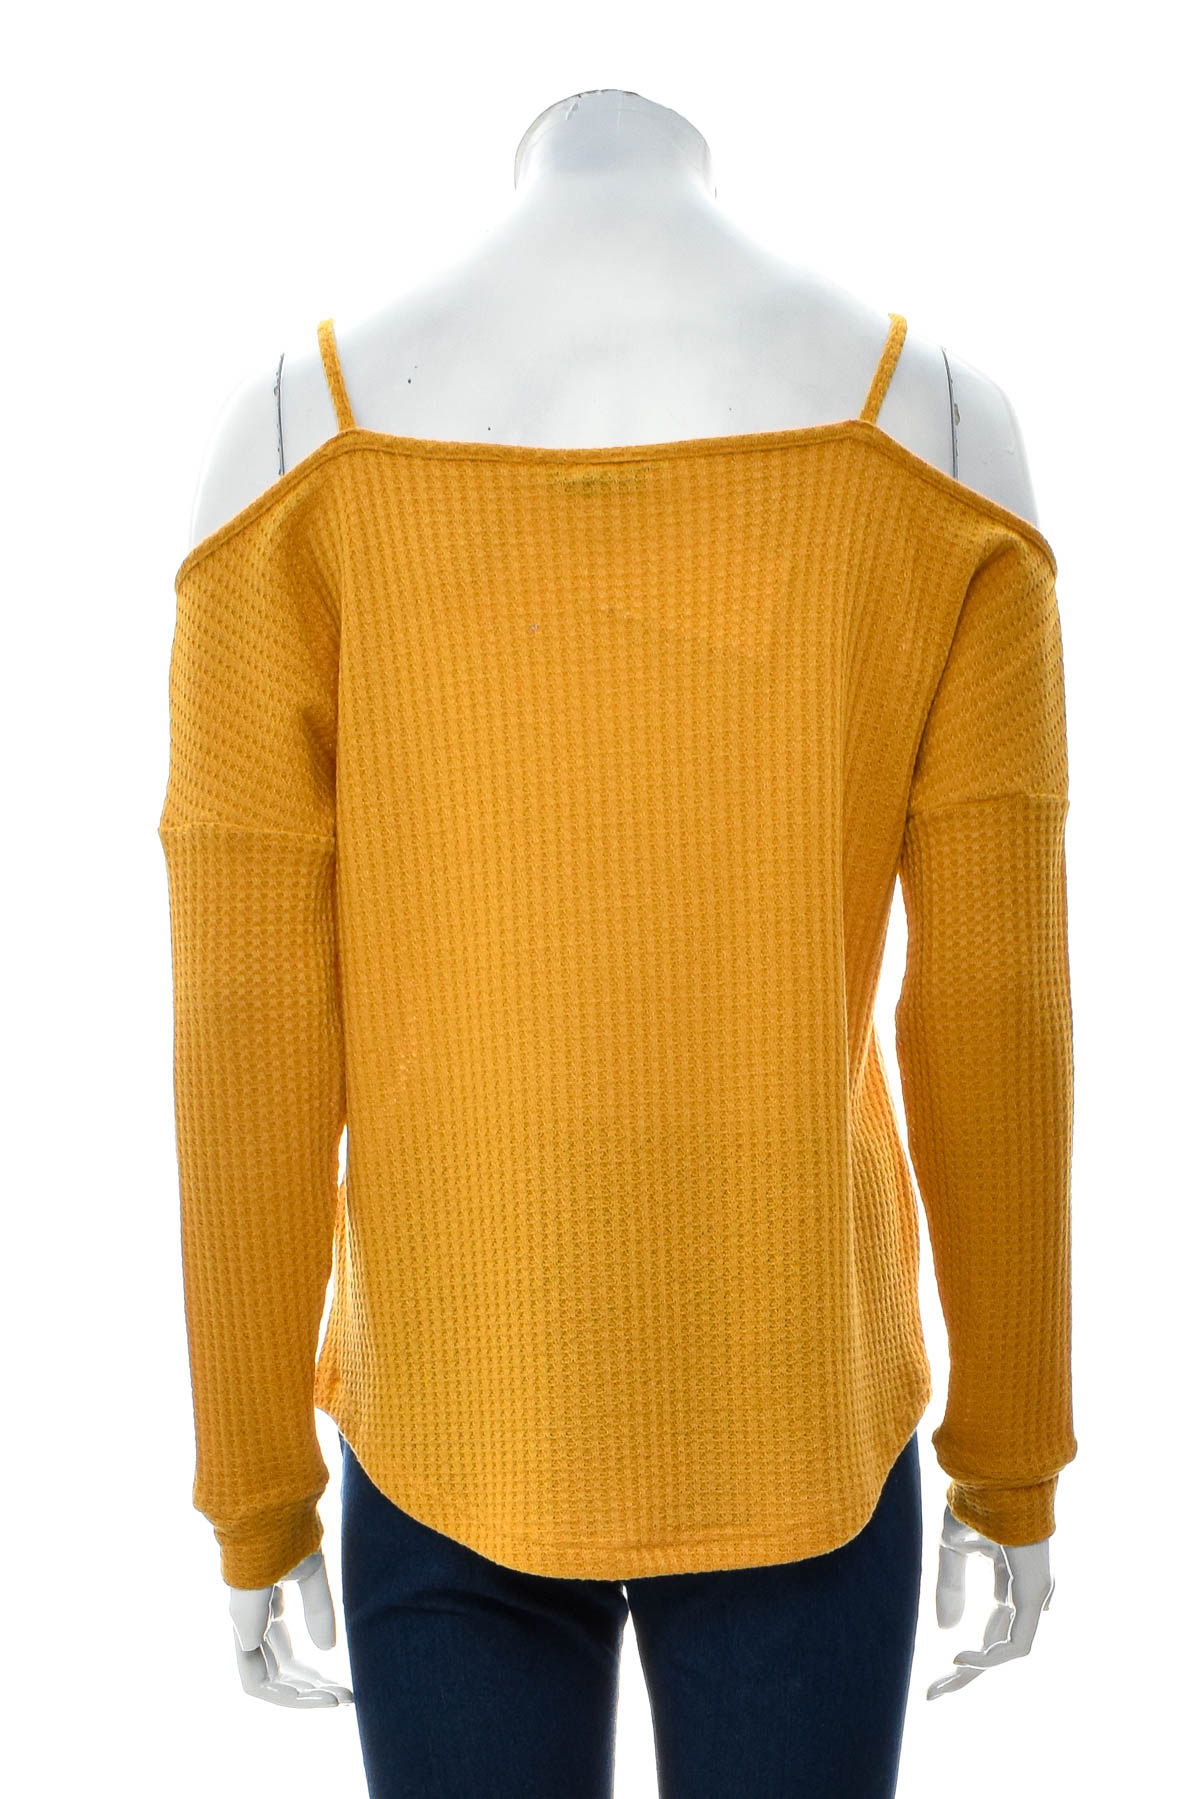 Women's sweater - Zero - 1